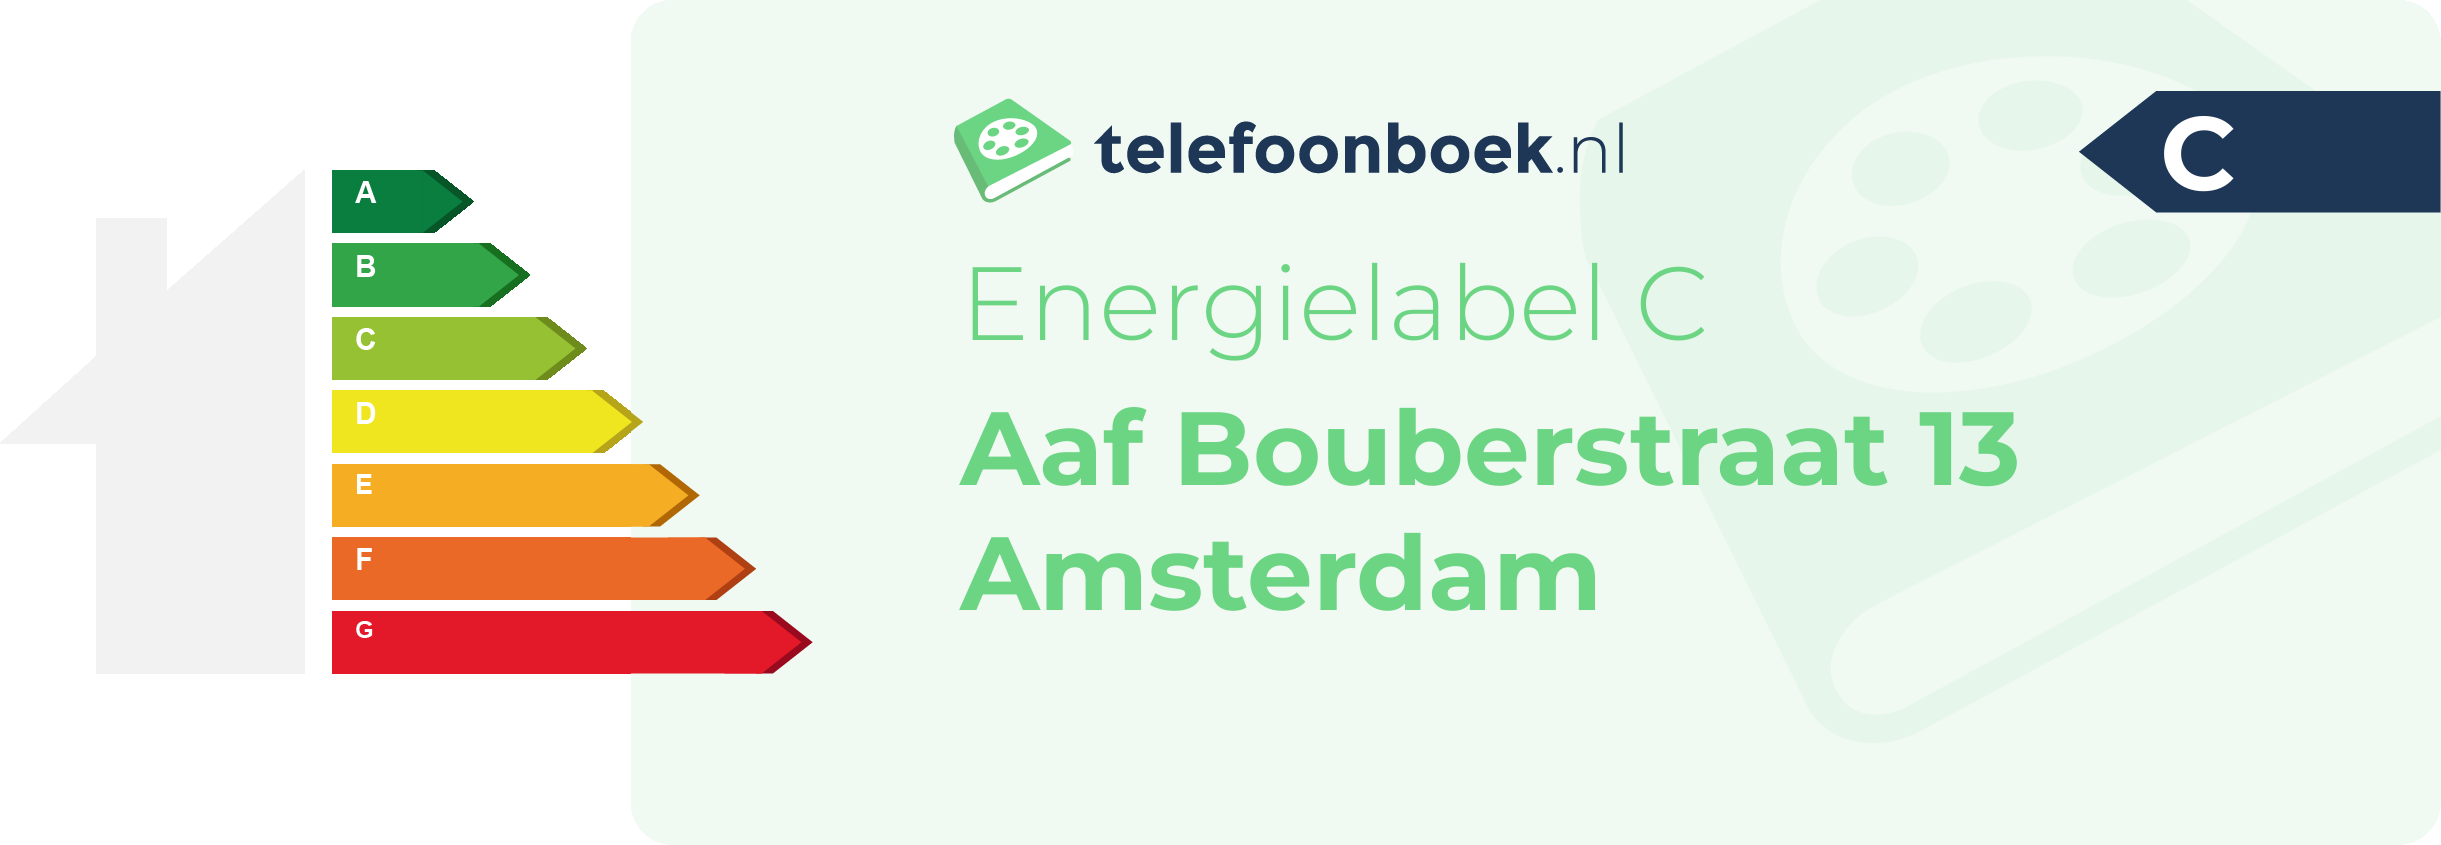 Energielabel Aaf Bouberstraat 13 Amsterdam